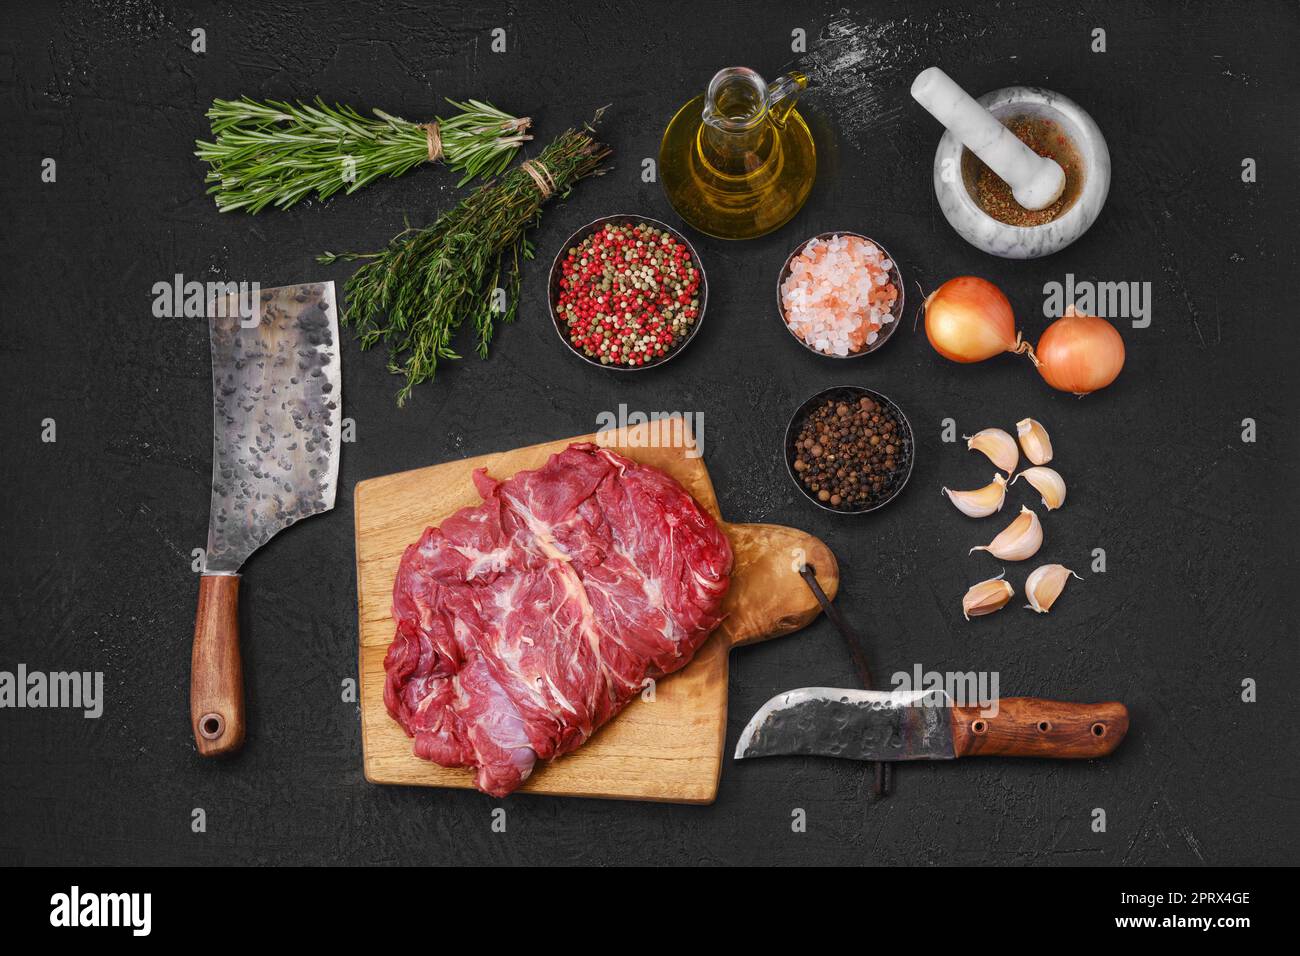 Vista superior de carne de cordero sin hueso cruda en la tabla de cortar Foto de stock